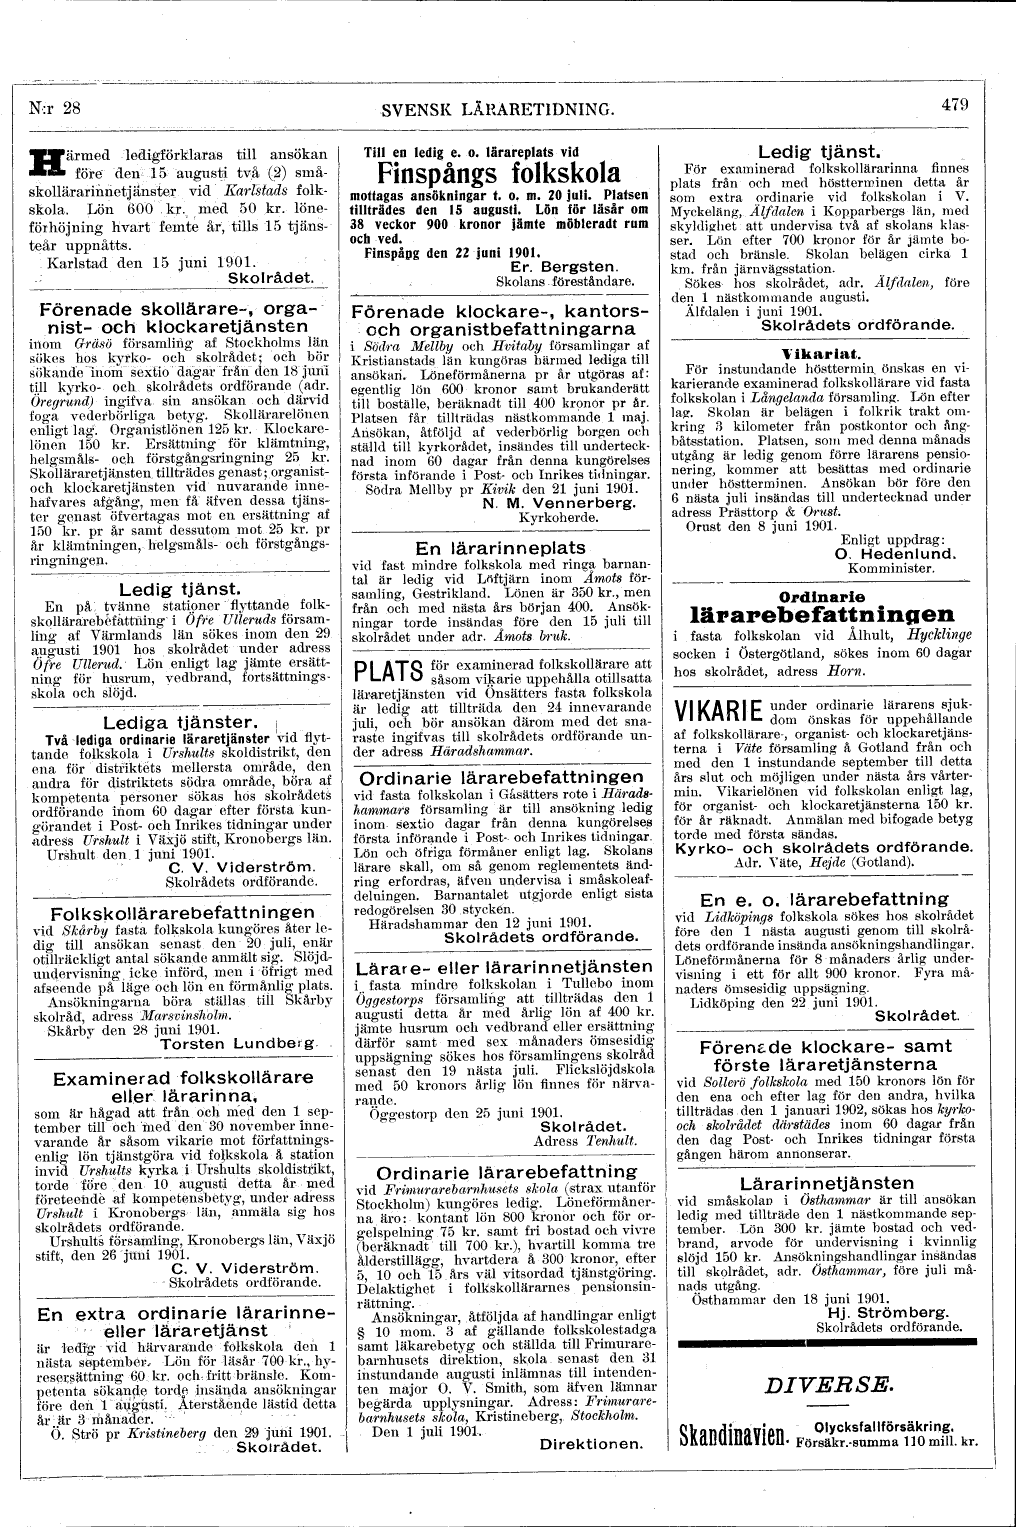 479 (Svensk Läraretidning / 20:e årg. 1901)